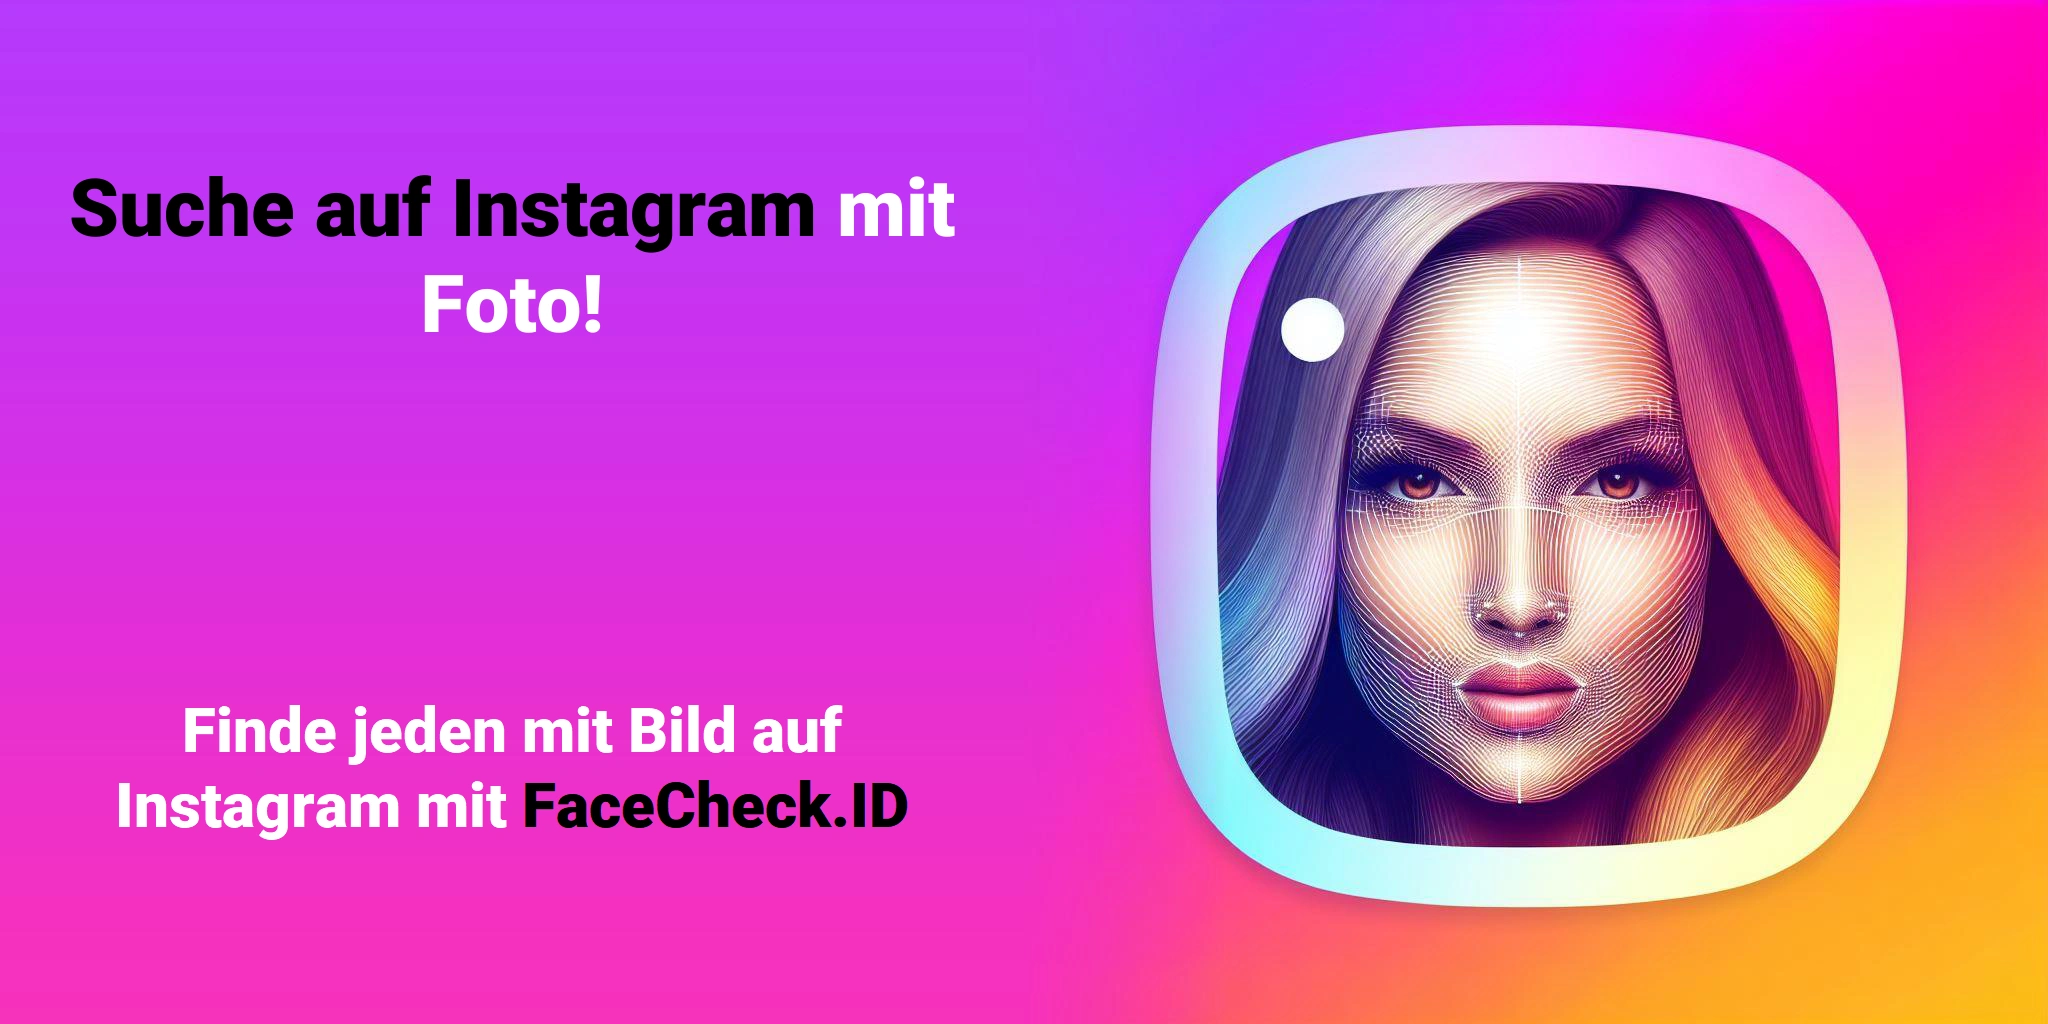 Suche auf Instagram mit Foto! Finde jeden mit Bild auf Instagram mit FaceCheck.ID